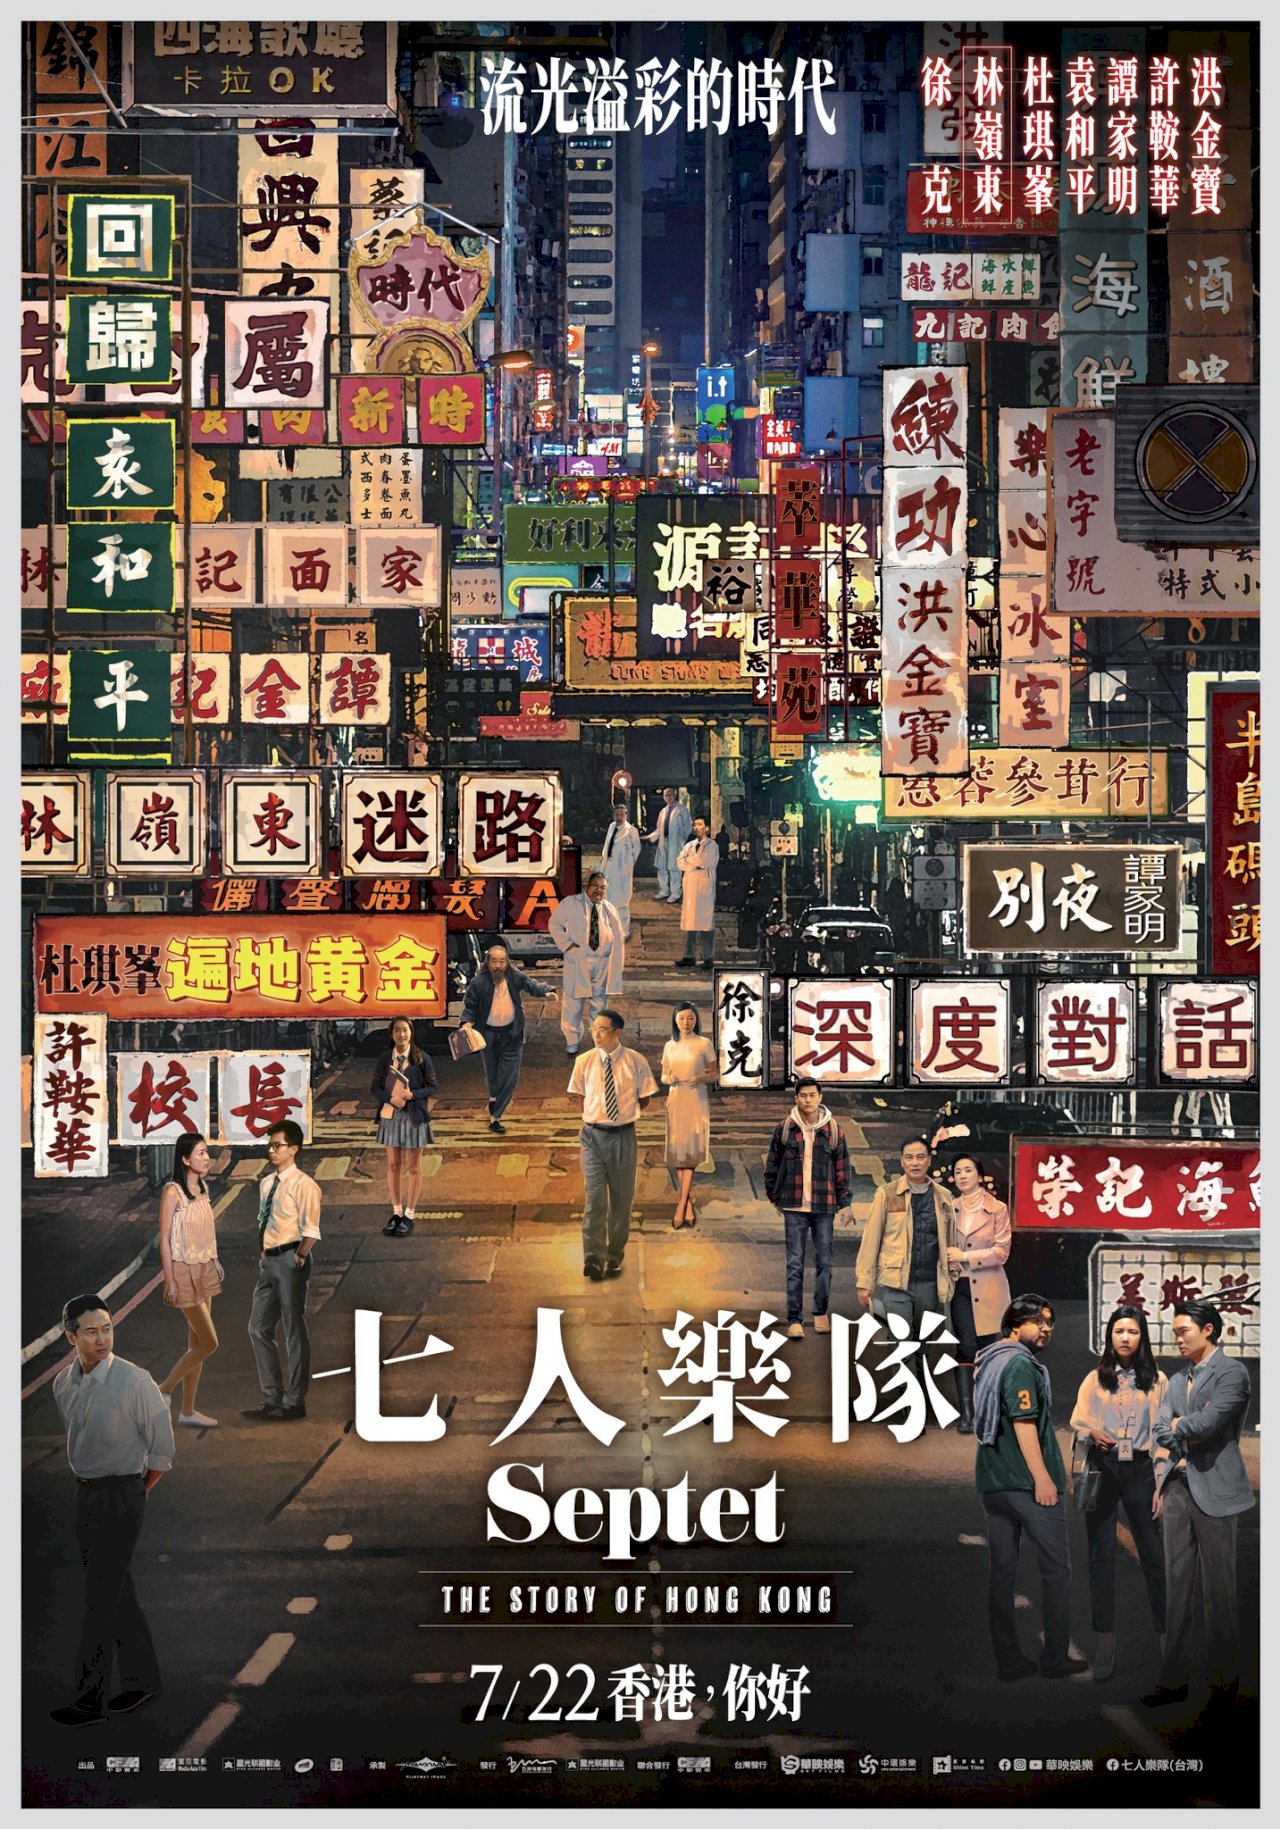 香港的過去、現在與未來—電影《七人樂隊》